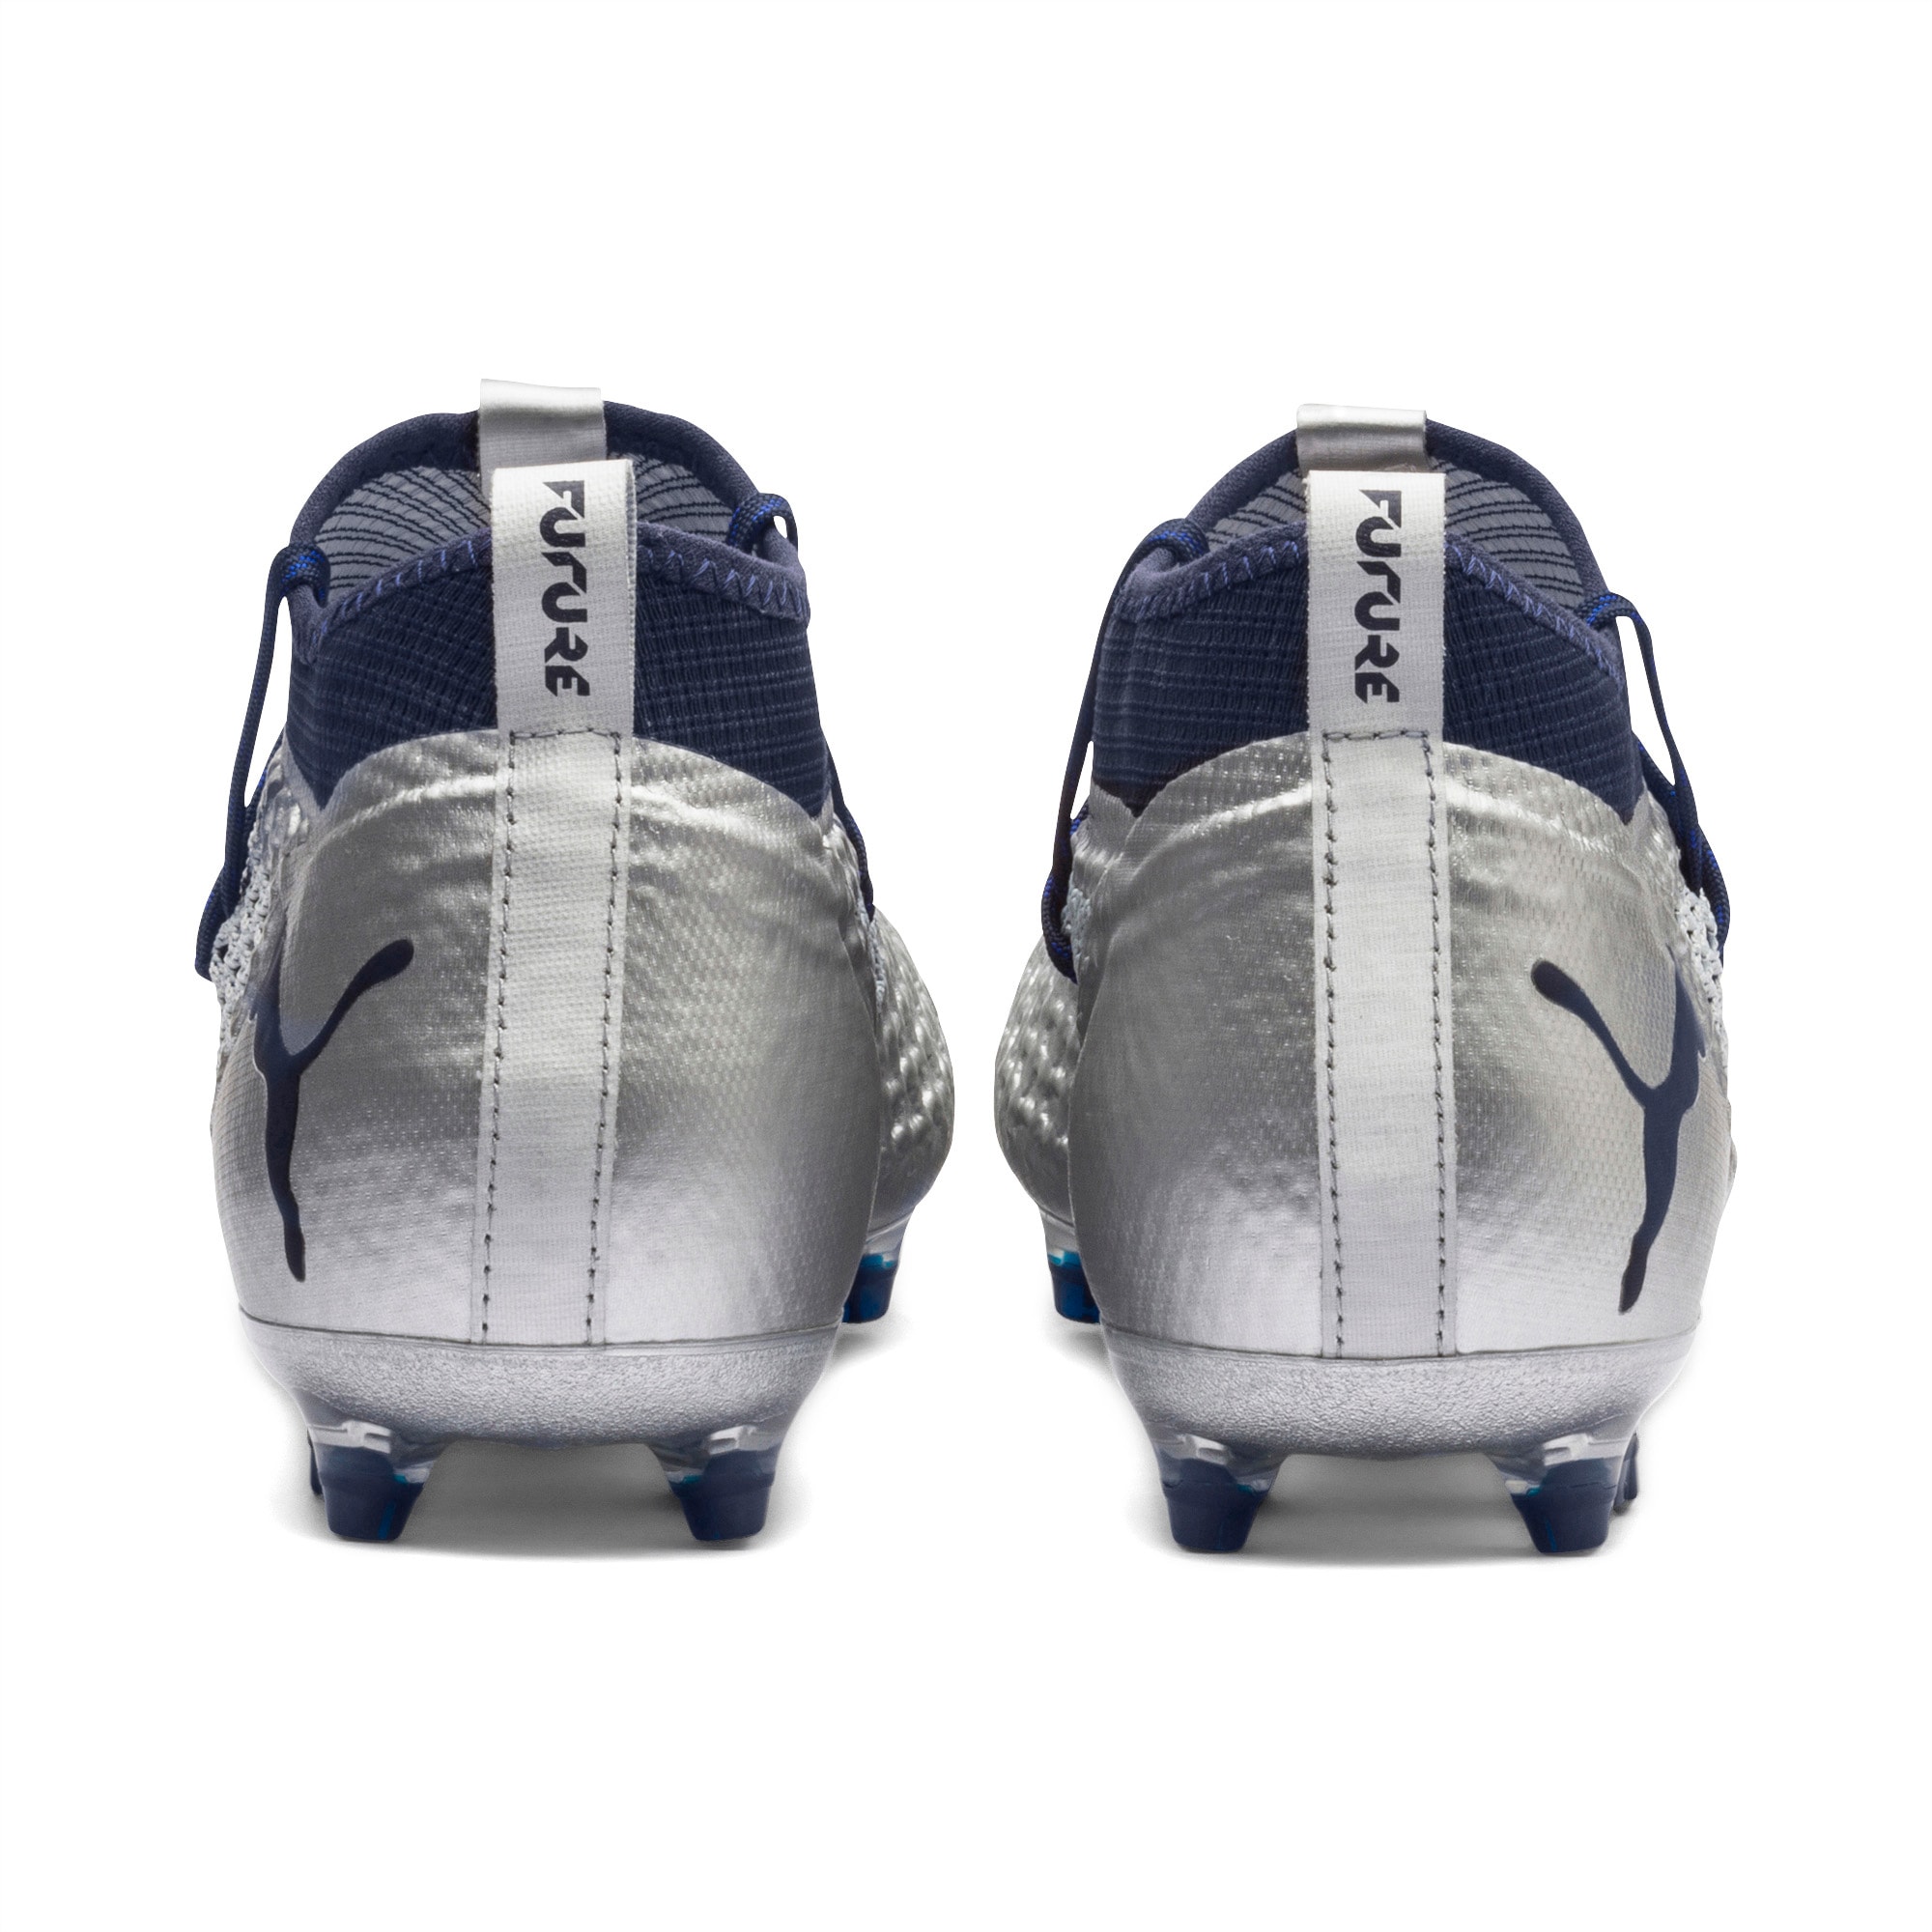 Future 2 2 Netfit Fg Ag Football Boots Puma Silver Peacoat